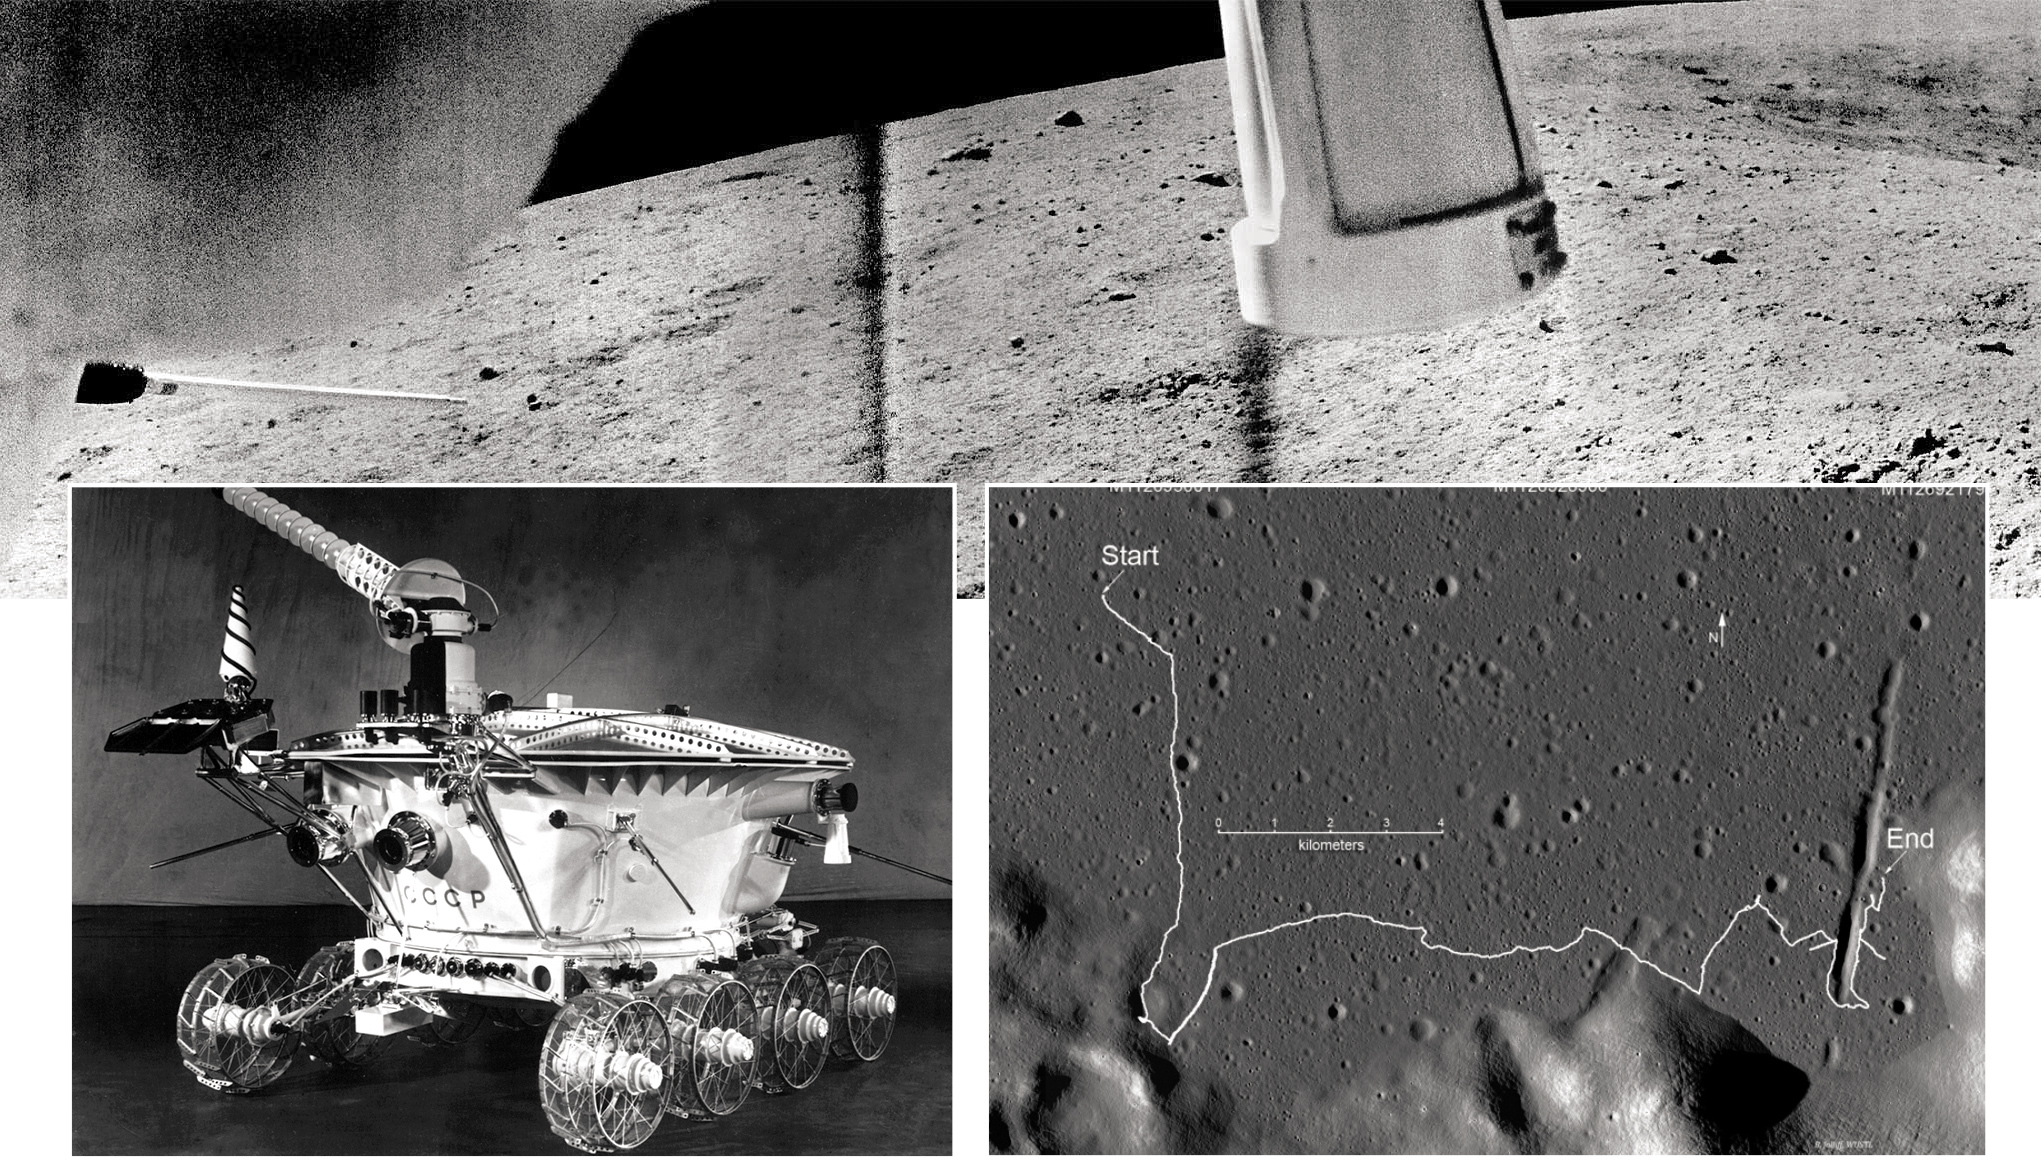 Какой аппарат помогал исследовать поверхность луны